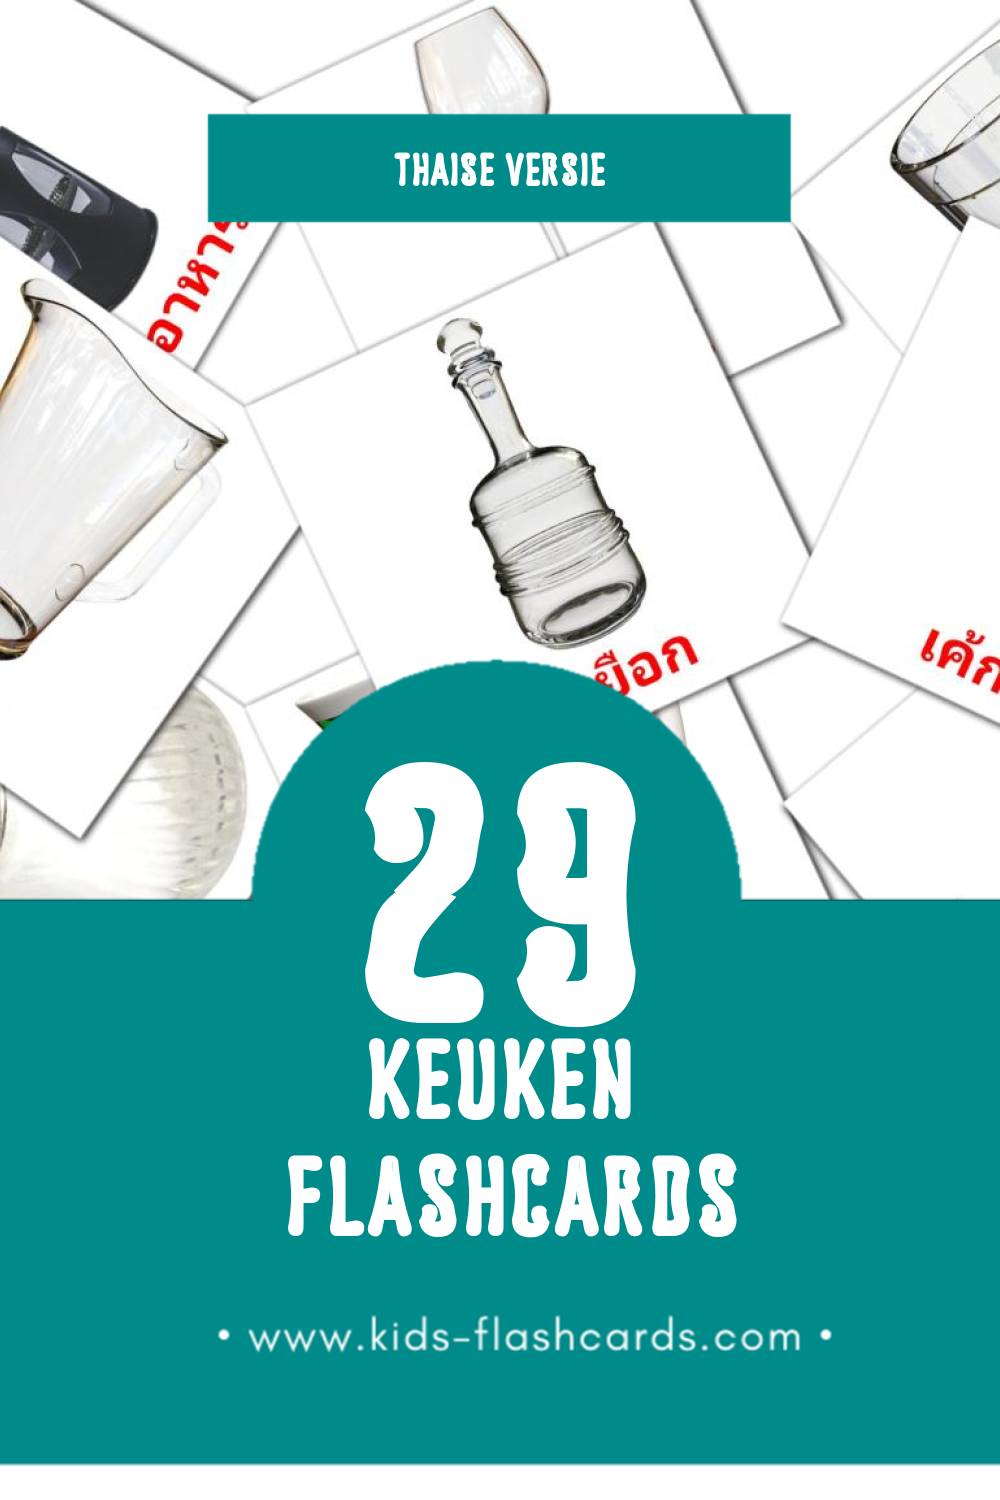 Visuele ครัว Flashcards voor Kleuters (29 kaarten in het Thais)